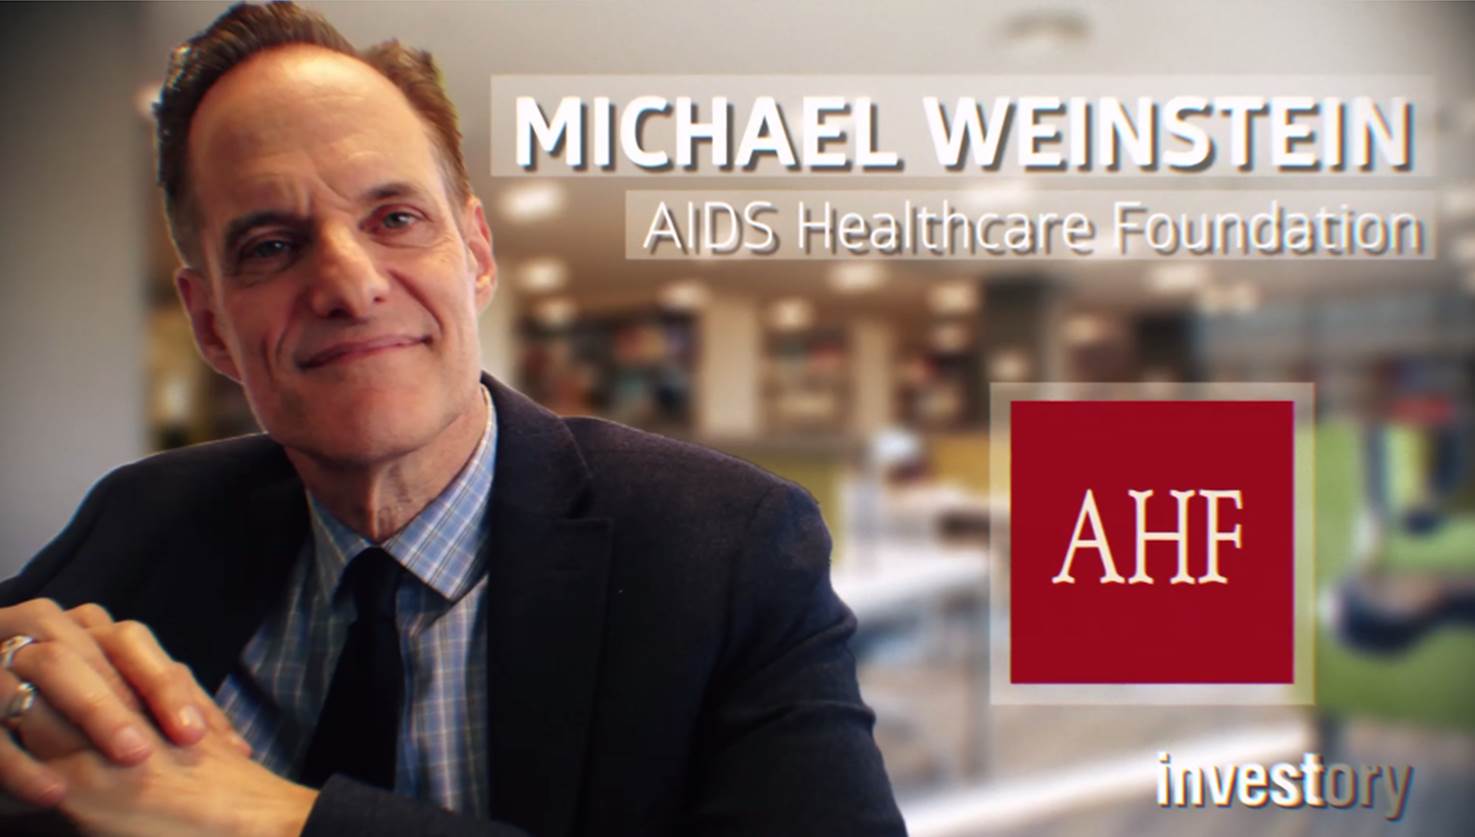 Michael Weinstein’s Anti-HIV Empire